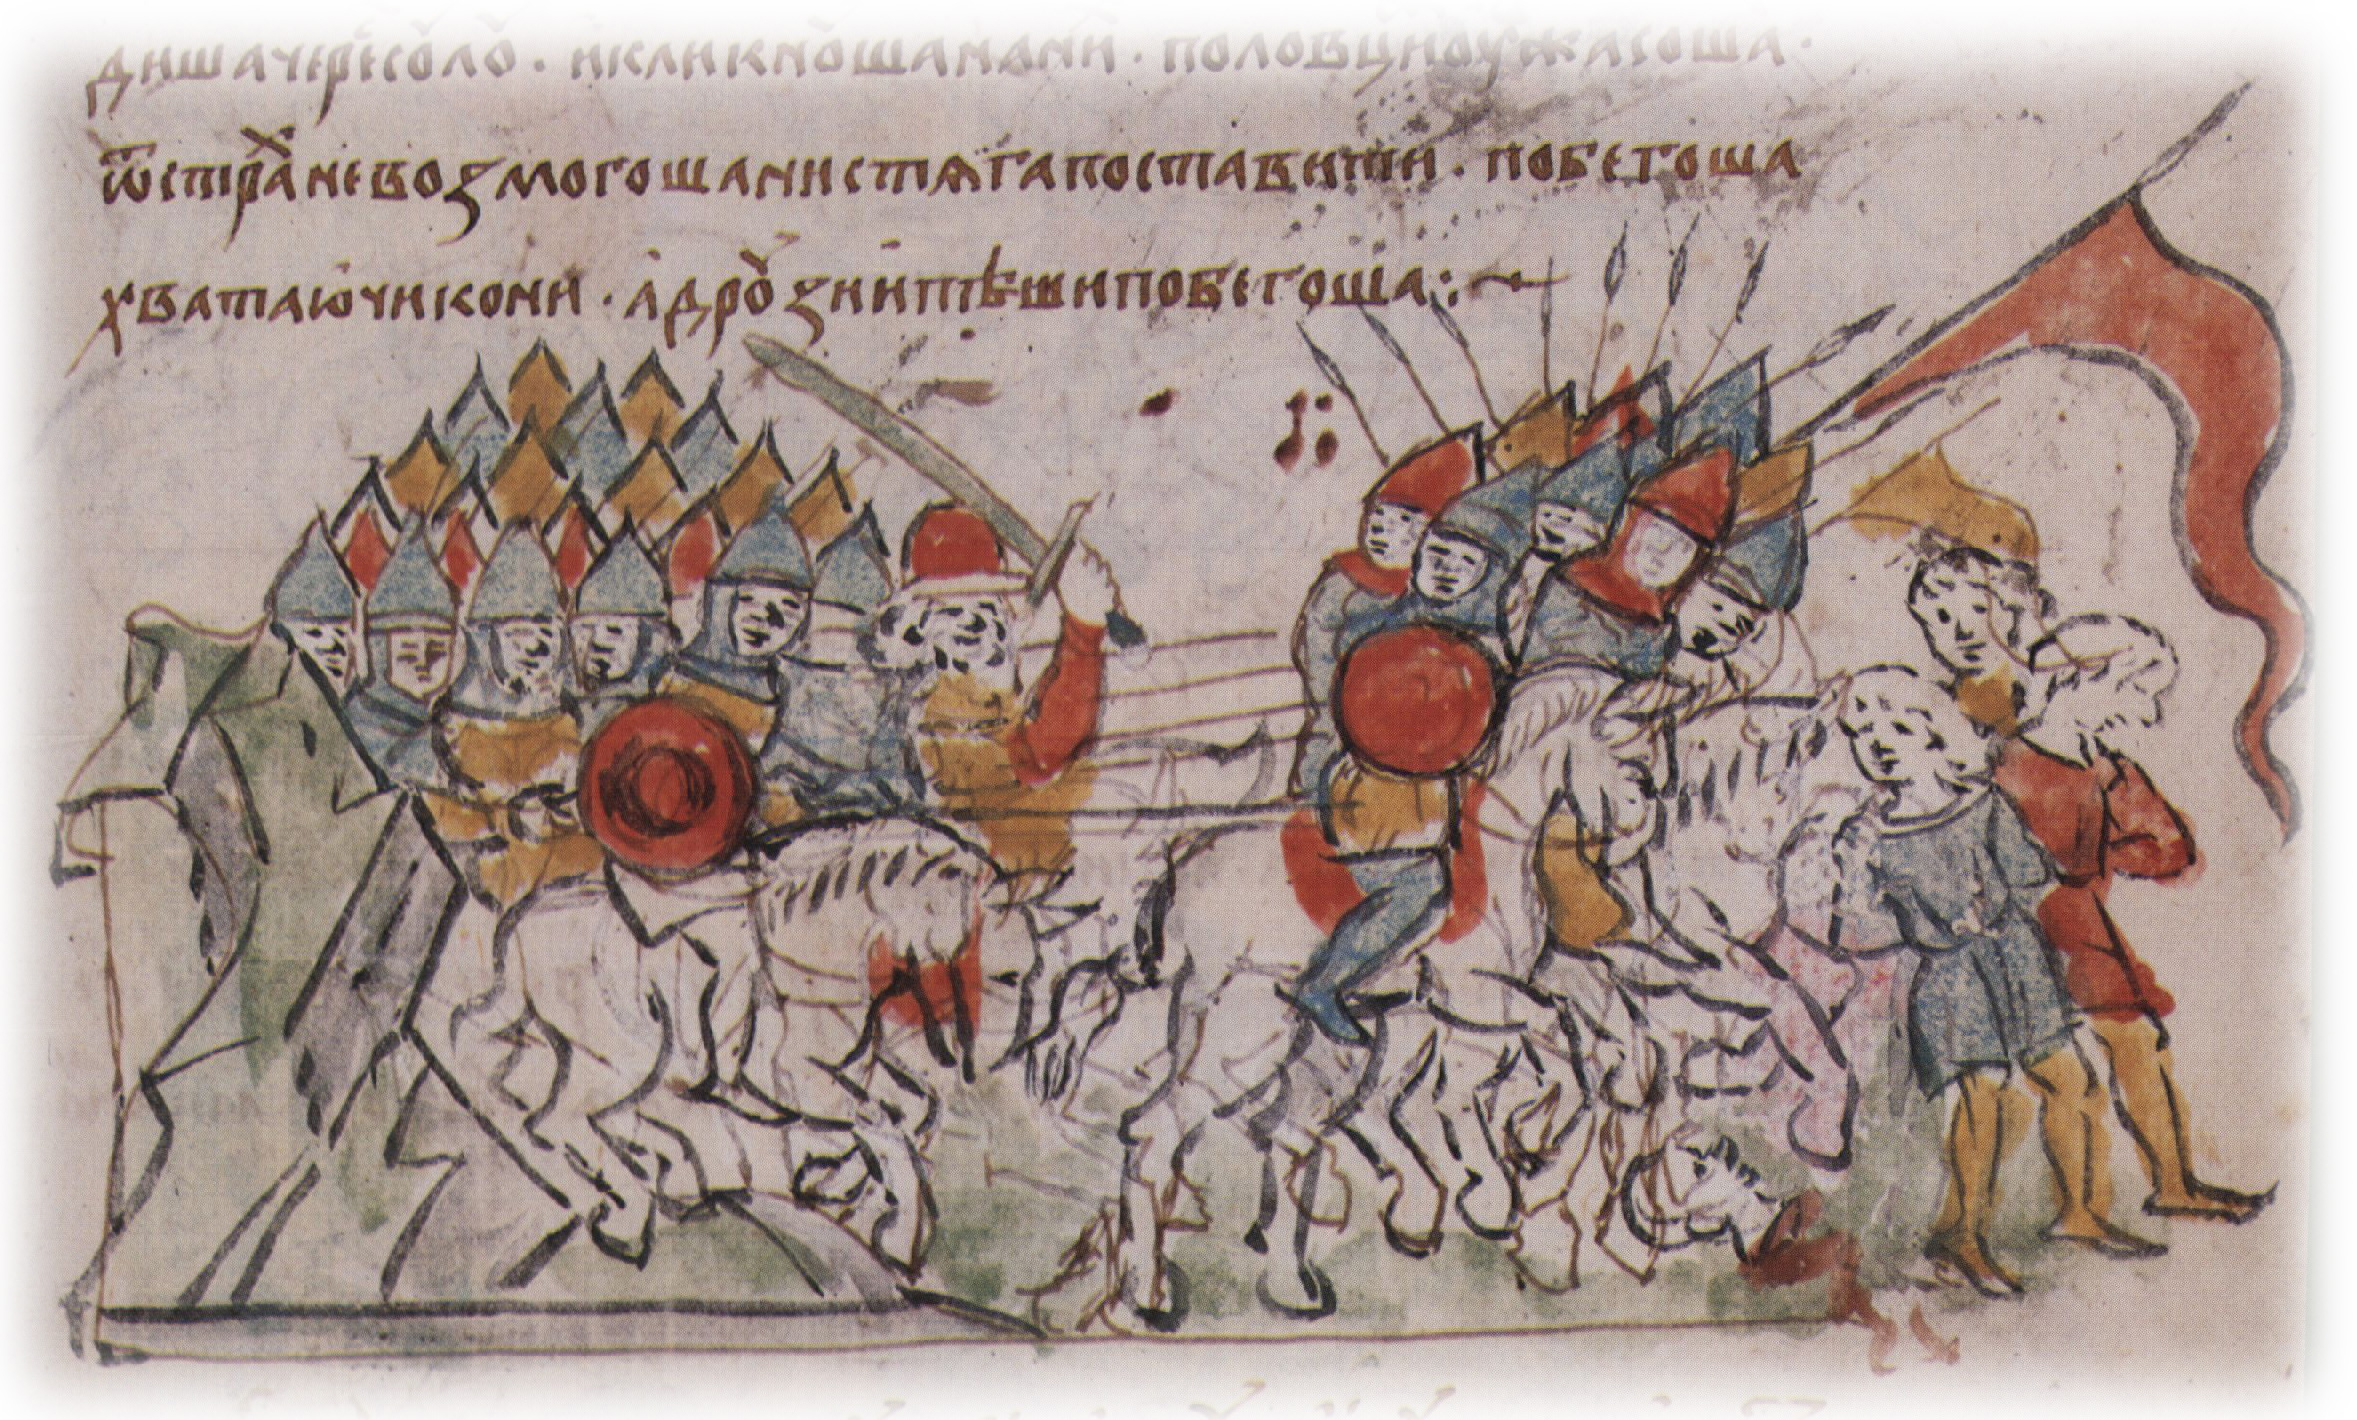 27 марта - Памятная дата военной истории России - Битва при Сальнице (1111 год).